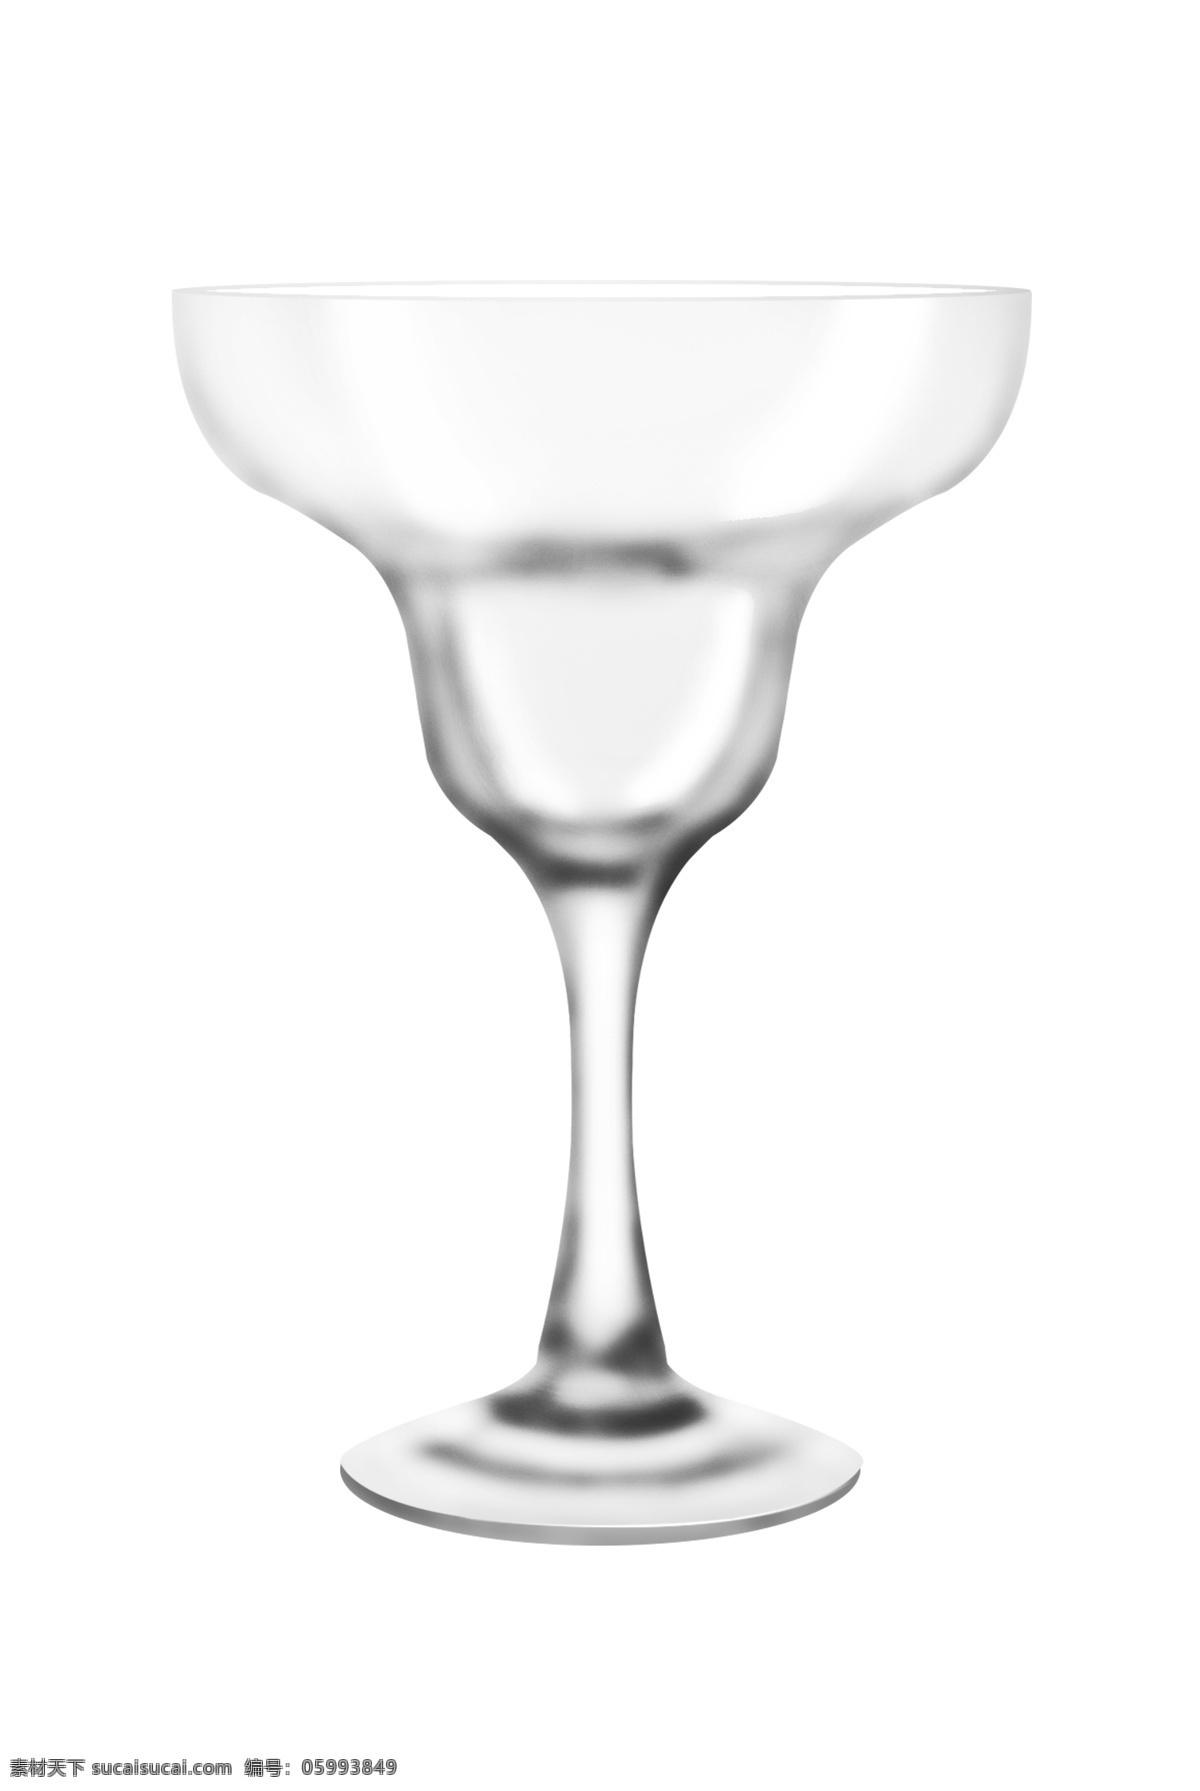 玻璃 容器 鸡尾 酒杯 玻璃容器 鸡尾酒杯 玻璃杯 杯具 高脚酒杯 酒吧 饮品 喝酒 玻璃器皿 玻璃材质